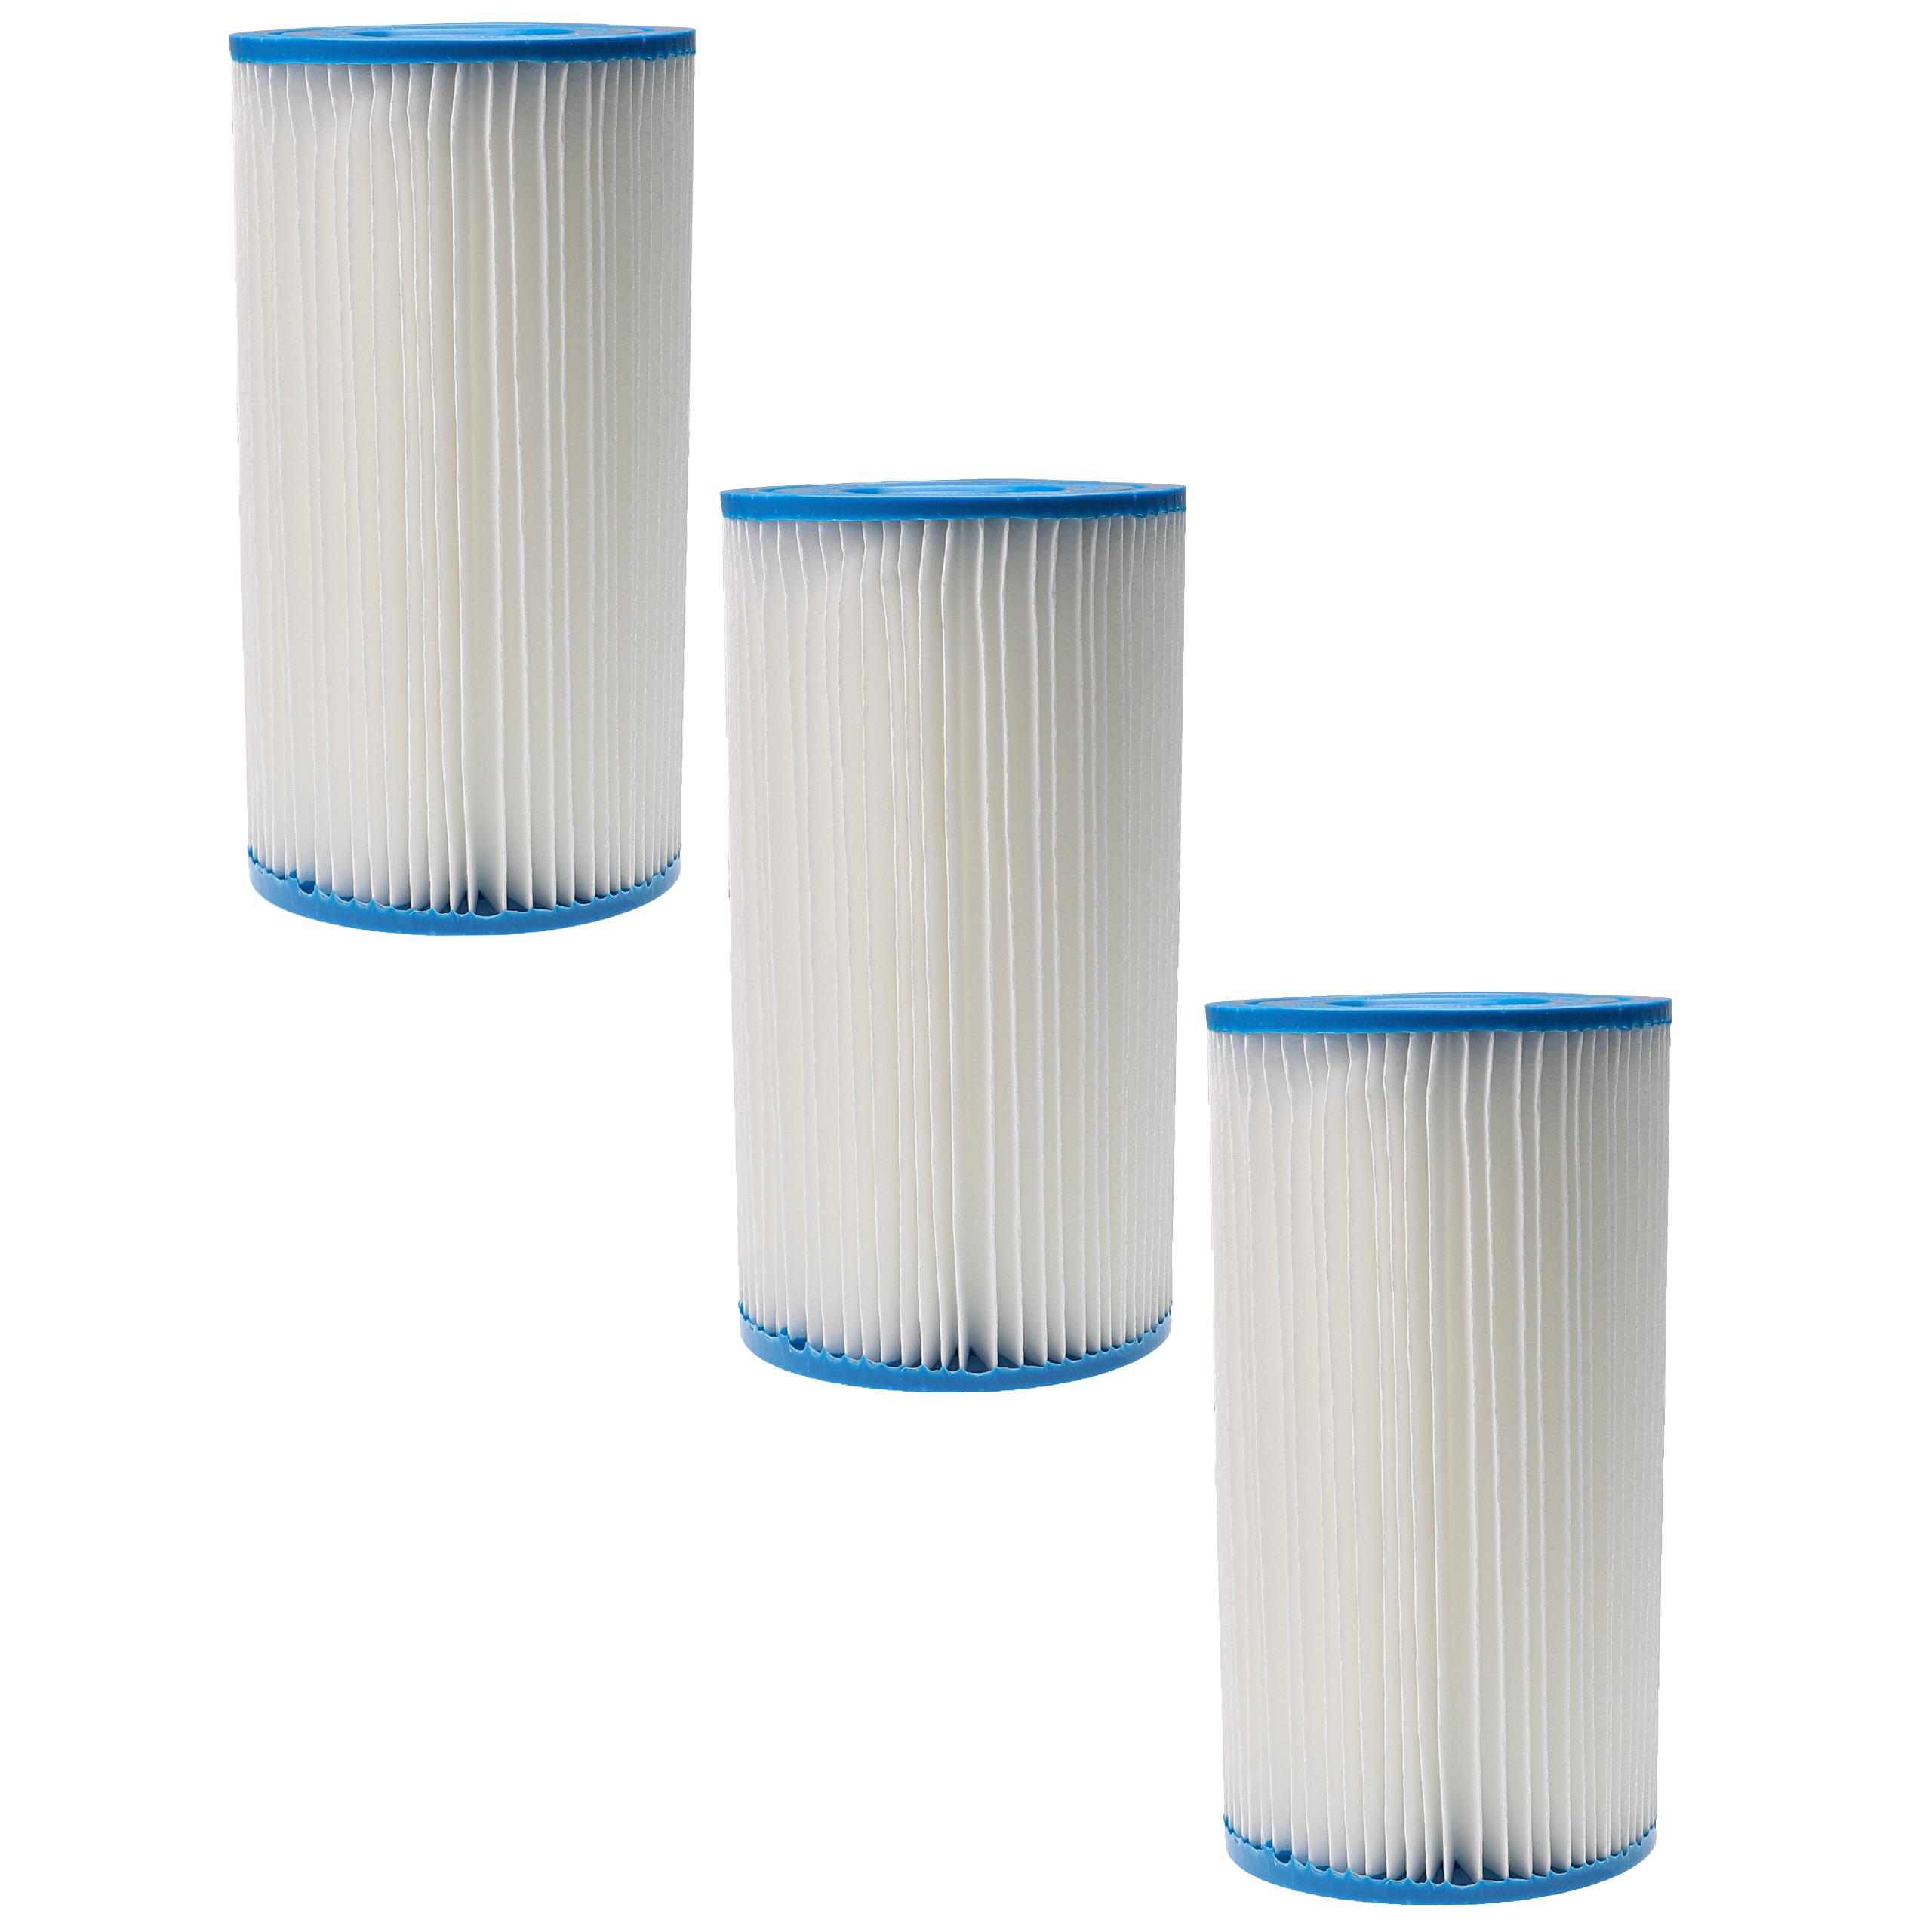 3x Filtres à eau remplace Intex filtre type A pour piscine, pompe de filtration Intex - Cartouche filtre